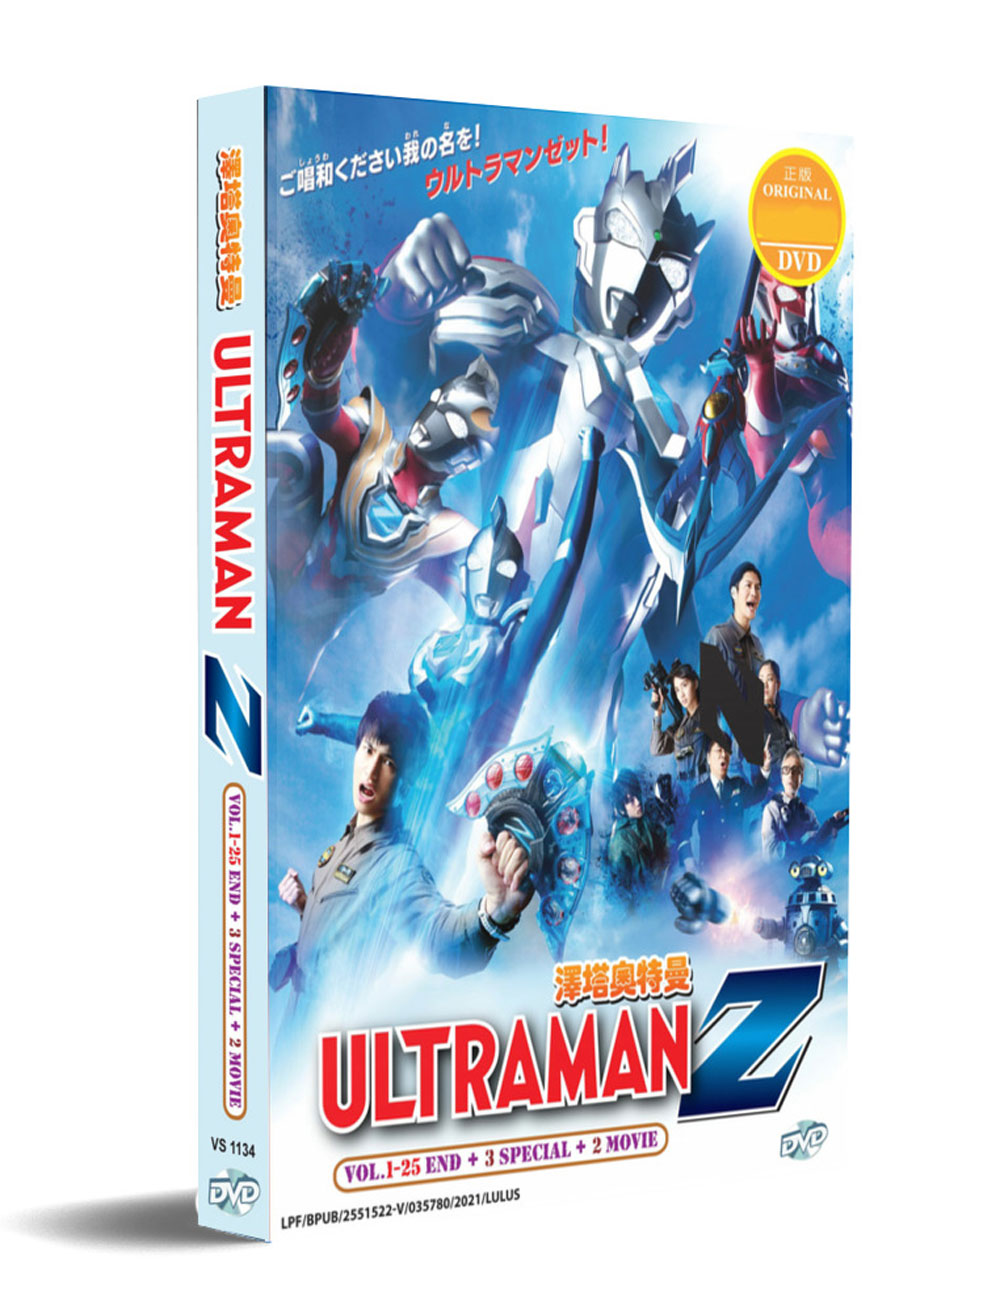 澤塔奧特曼 +3 Special +2 Movie (DVD) (2020) 動畫